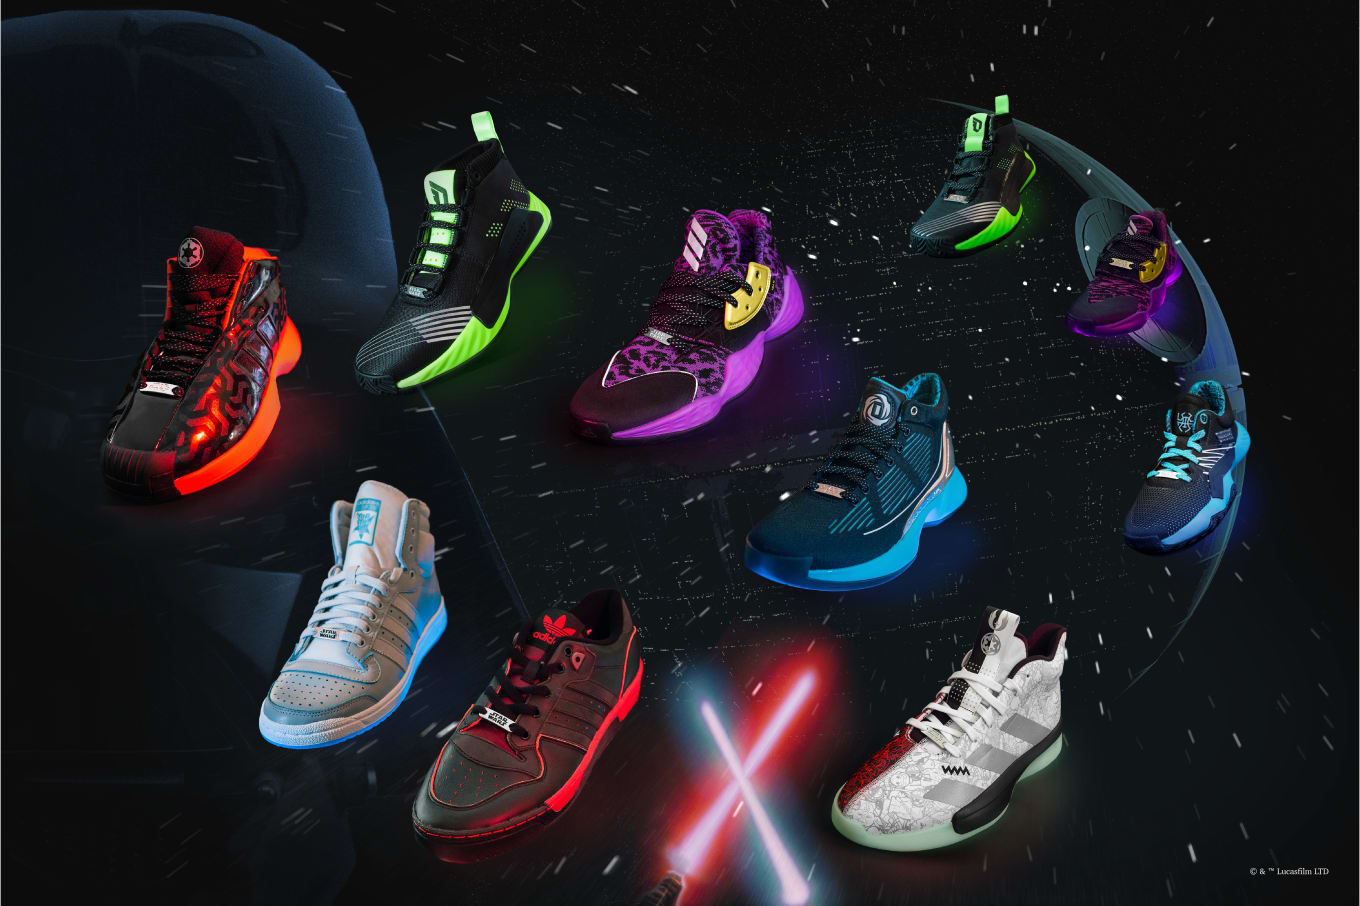 star wars x adidas pro next 2019